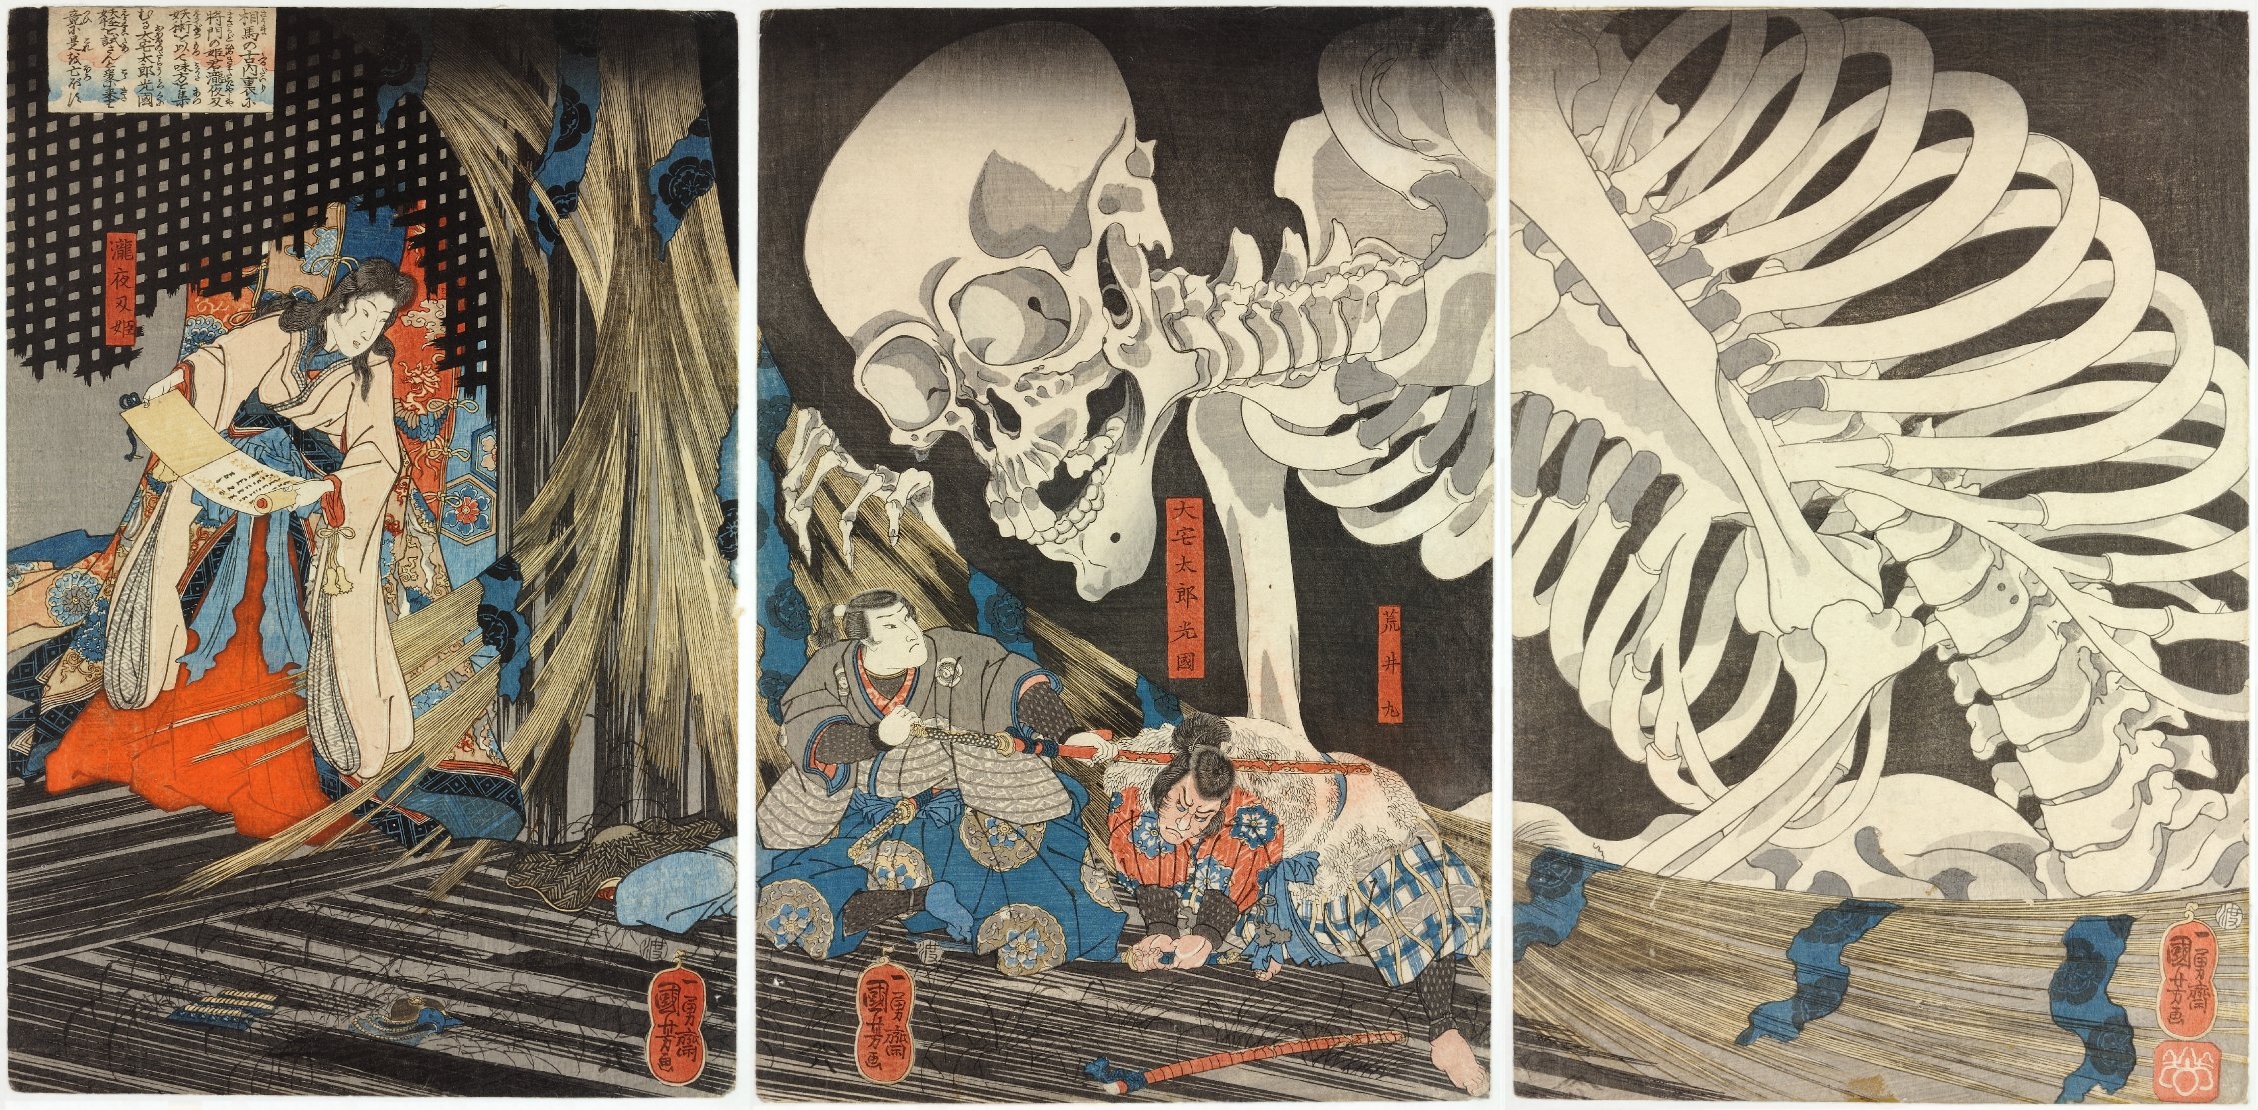 相馬之古内裏 by Utagawa Kuniyoshi - 約 1844 年 - 35 x 71 釐米 